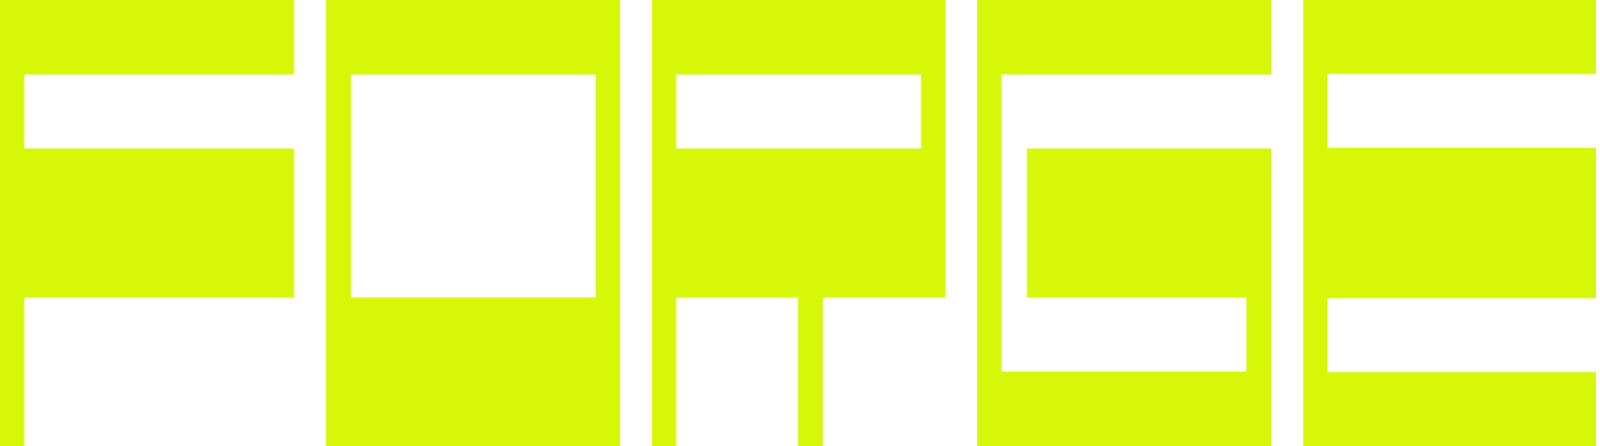 FRG01_neon-logo.png